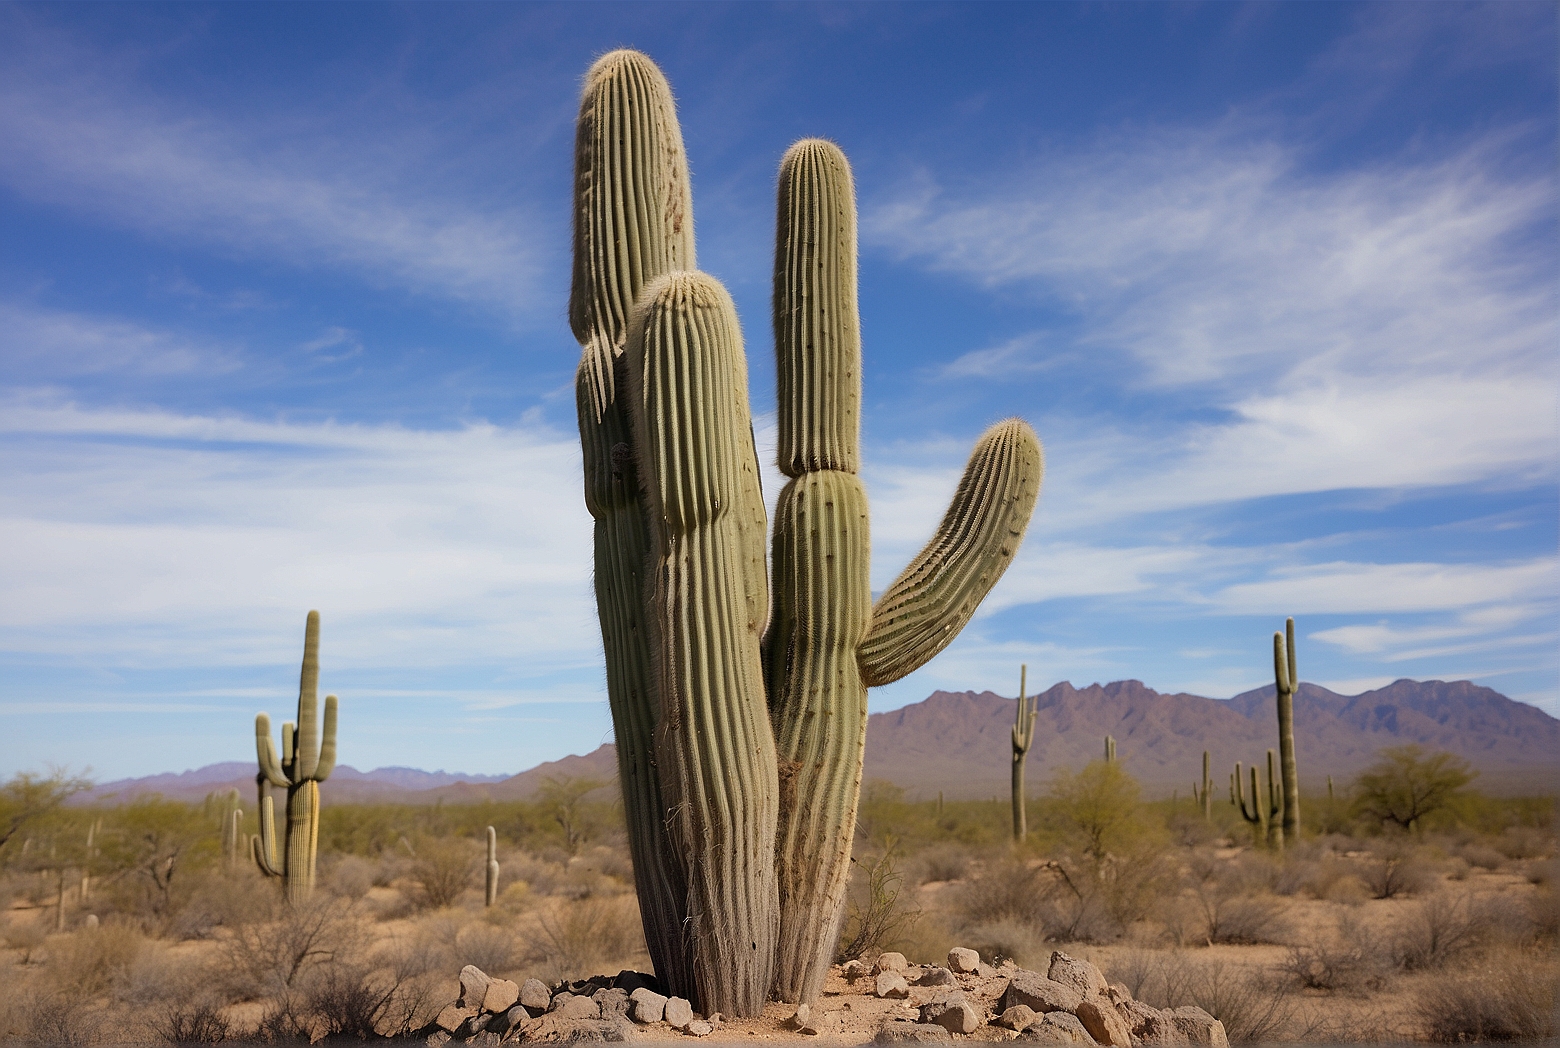 The Weight of a Saguaro Cactus